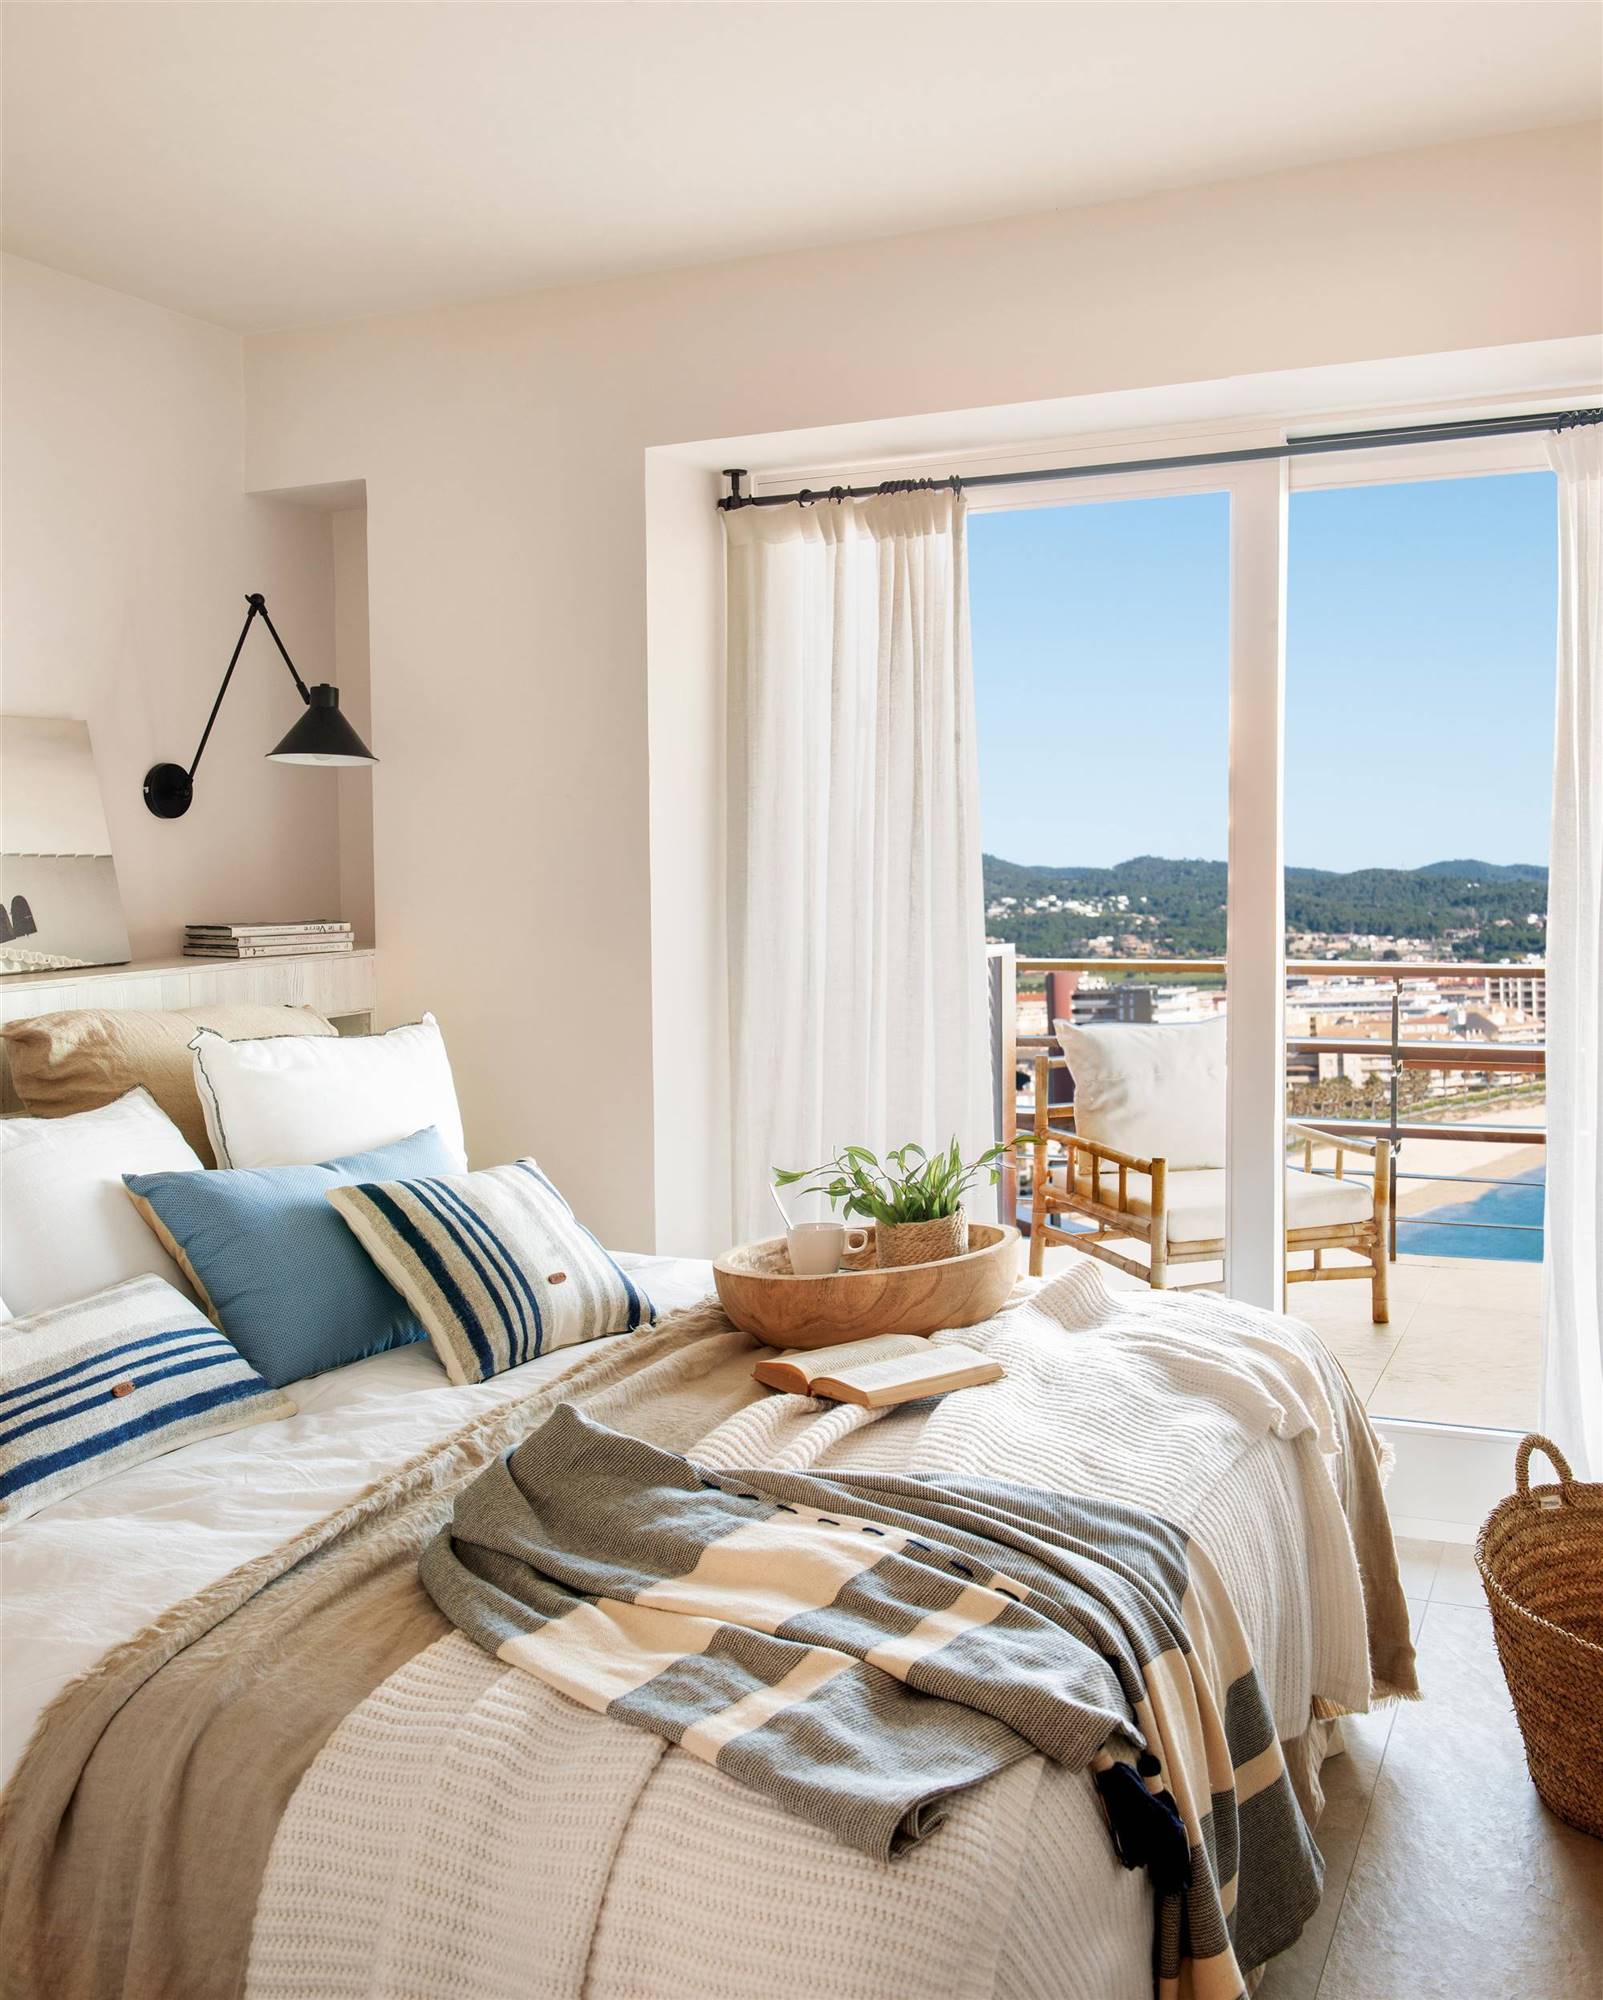 Dormitorio de verano con vistas a la playa y cojines a rayas azules y blancas. 